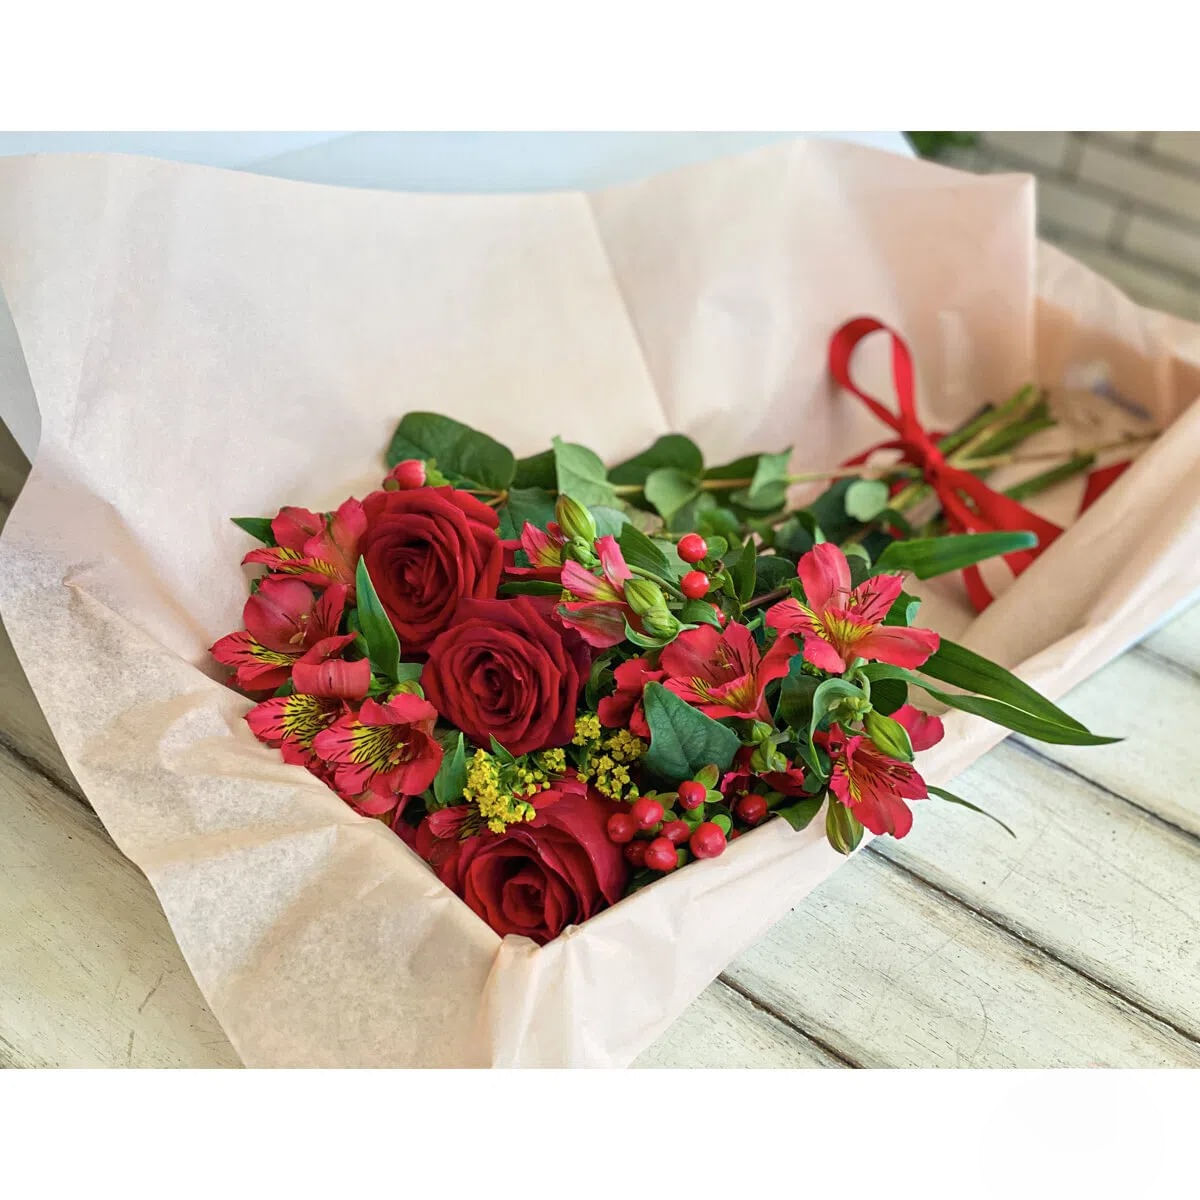 Buchet "Rosu" in cutie cu 3 fire trandafir, 2 alstroemeria, 3 hypericum, solidago